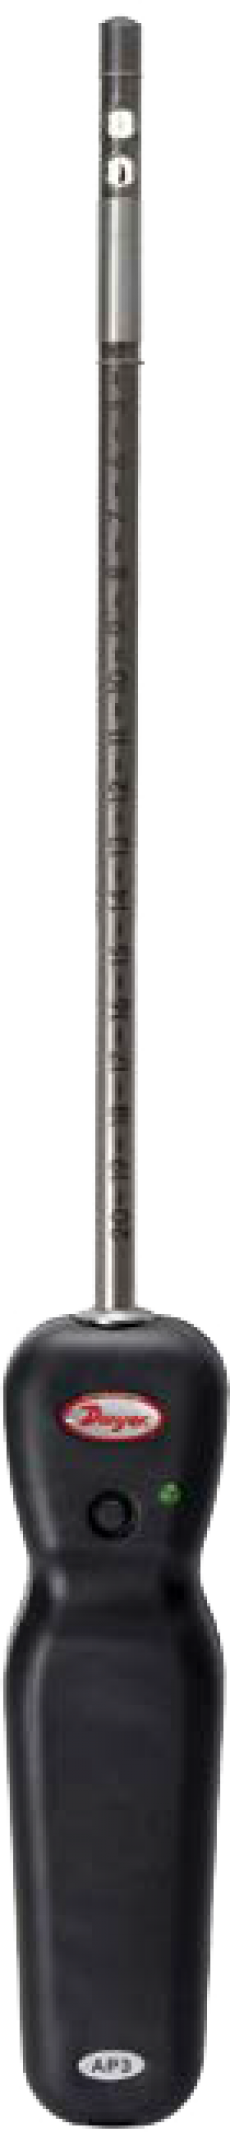 Беспроводной термо-анемометр AP3